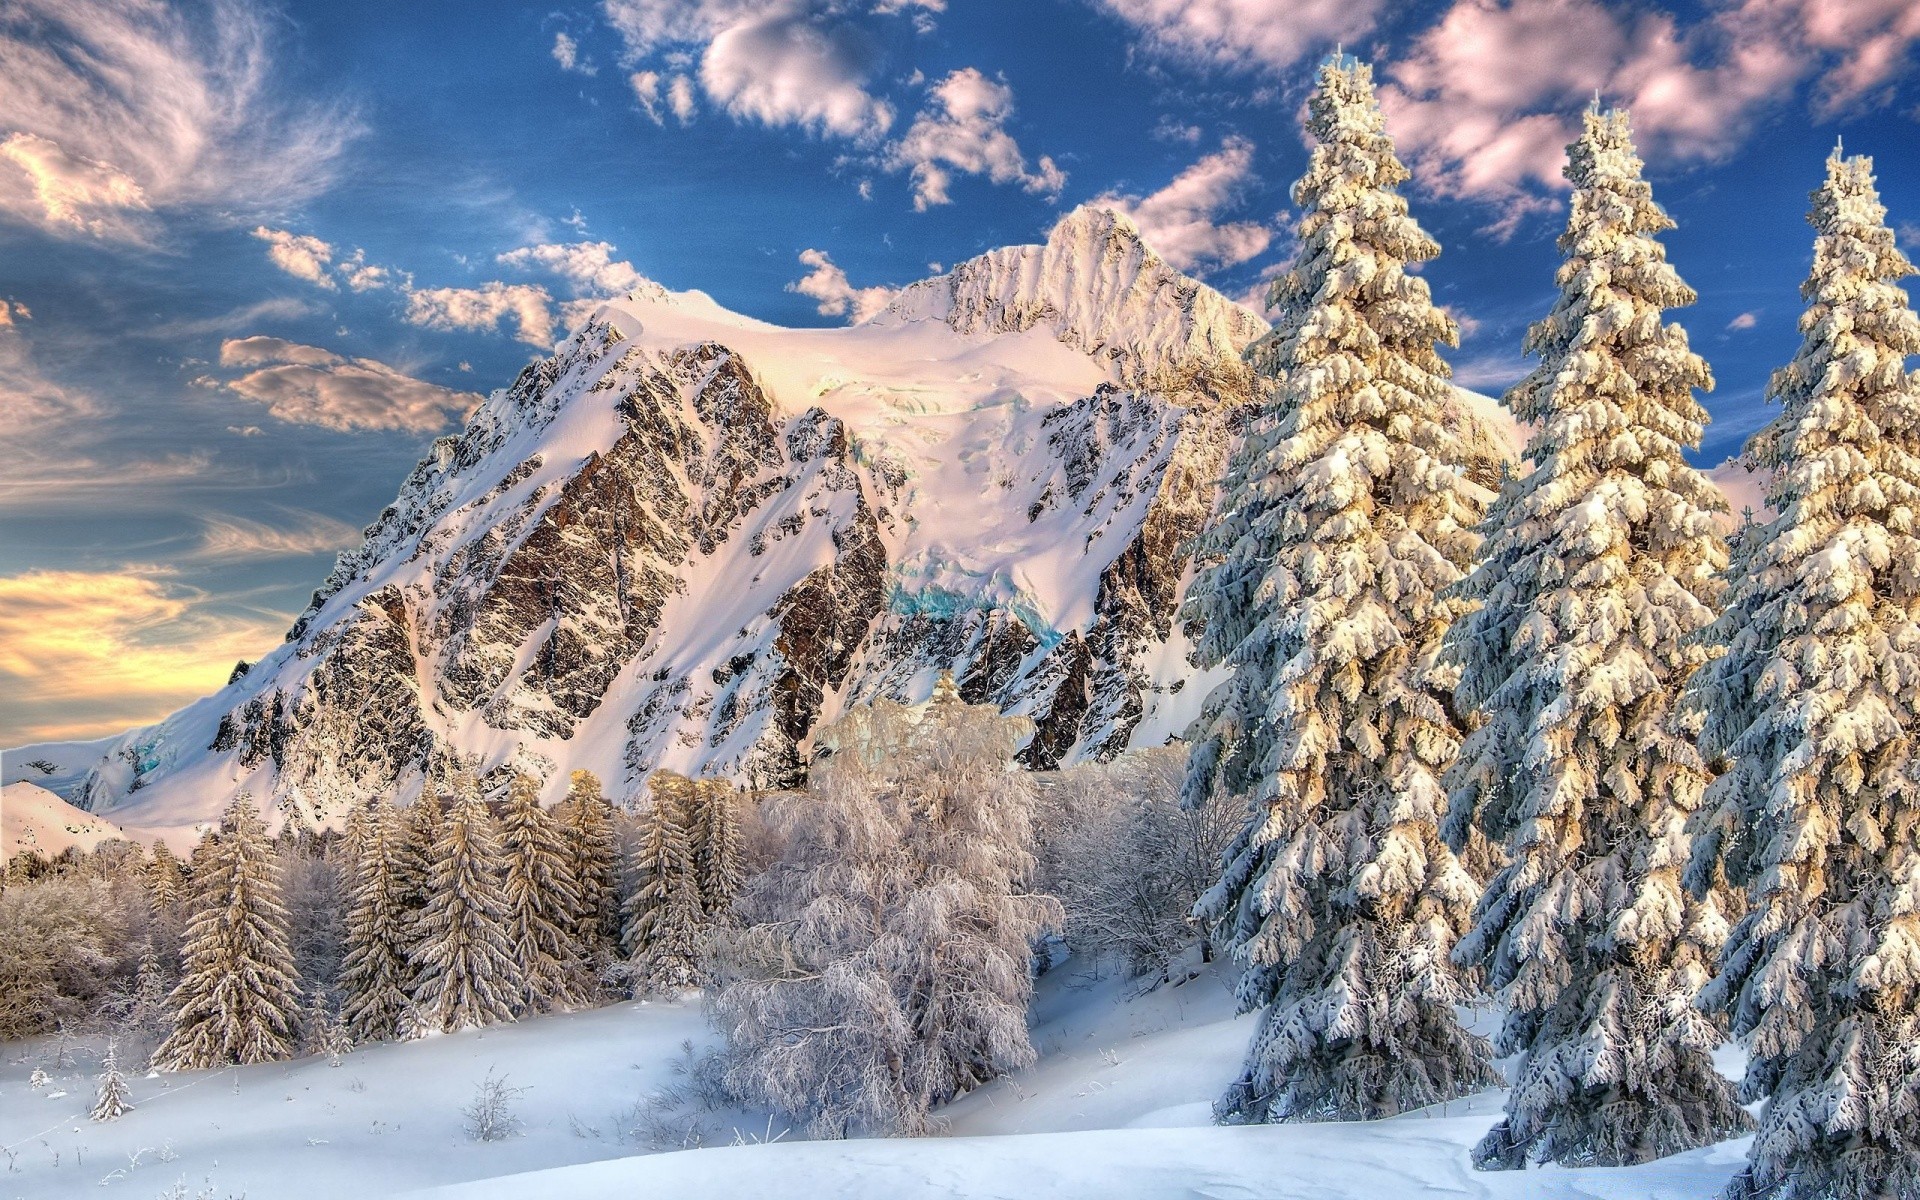 зима снег горы холодная лед пейзаж мороз древесины замороженные живописный сезон природа горный пик дерево альпийская небо эвергрин погода снежное